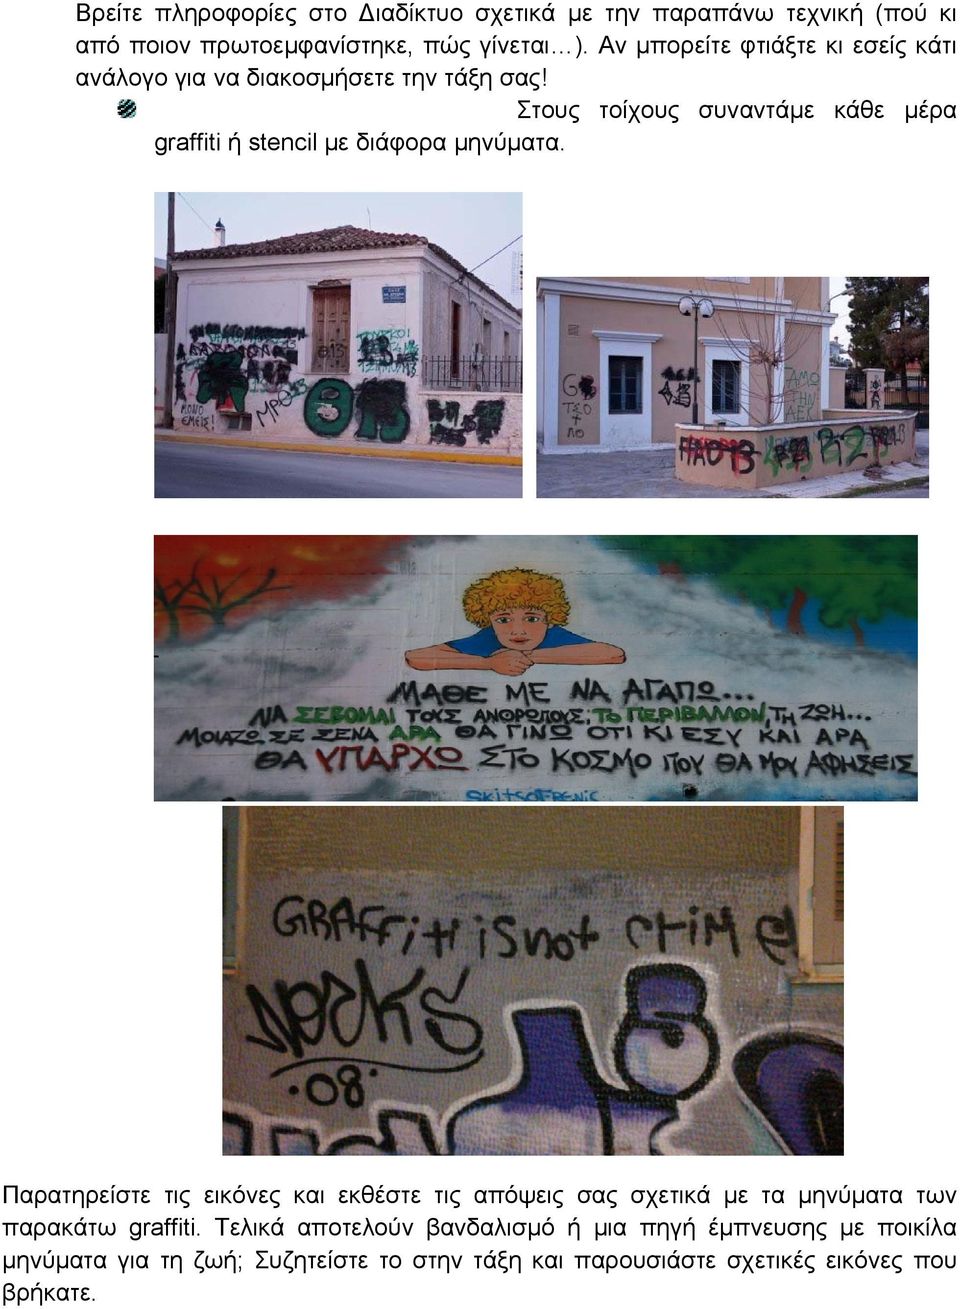 Στους τοίχους συναντάμε κάθε μέρα graffiti ή stencil με διάφορα μηνύματα.